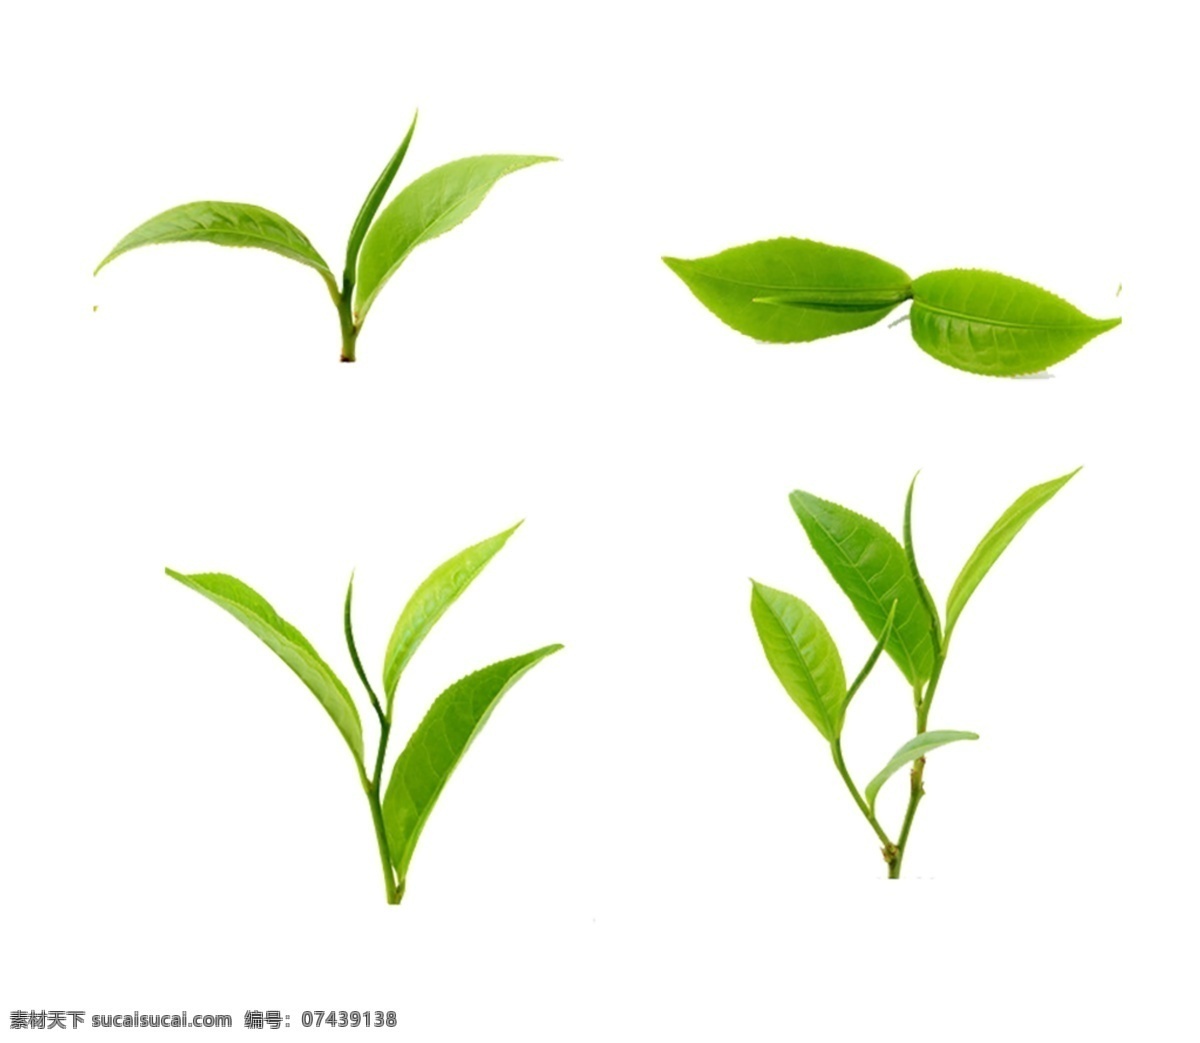 茶芽 茶叶 单芽 嫩芽 叶子 春芽 茶素材 绿叶 茶包装 包装设计 春茶